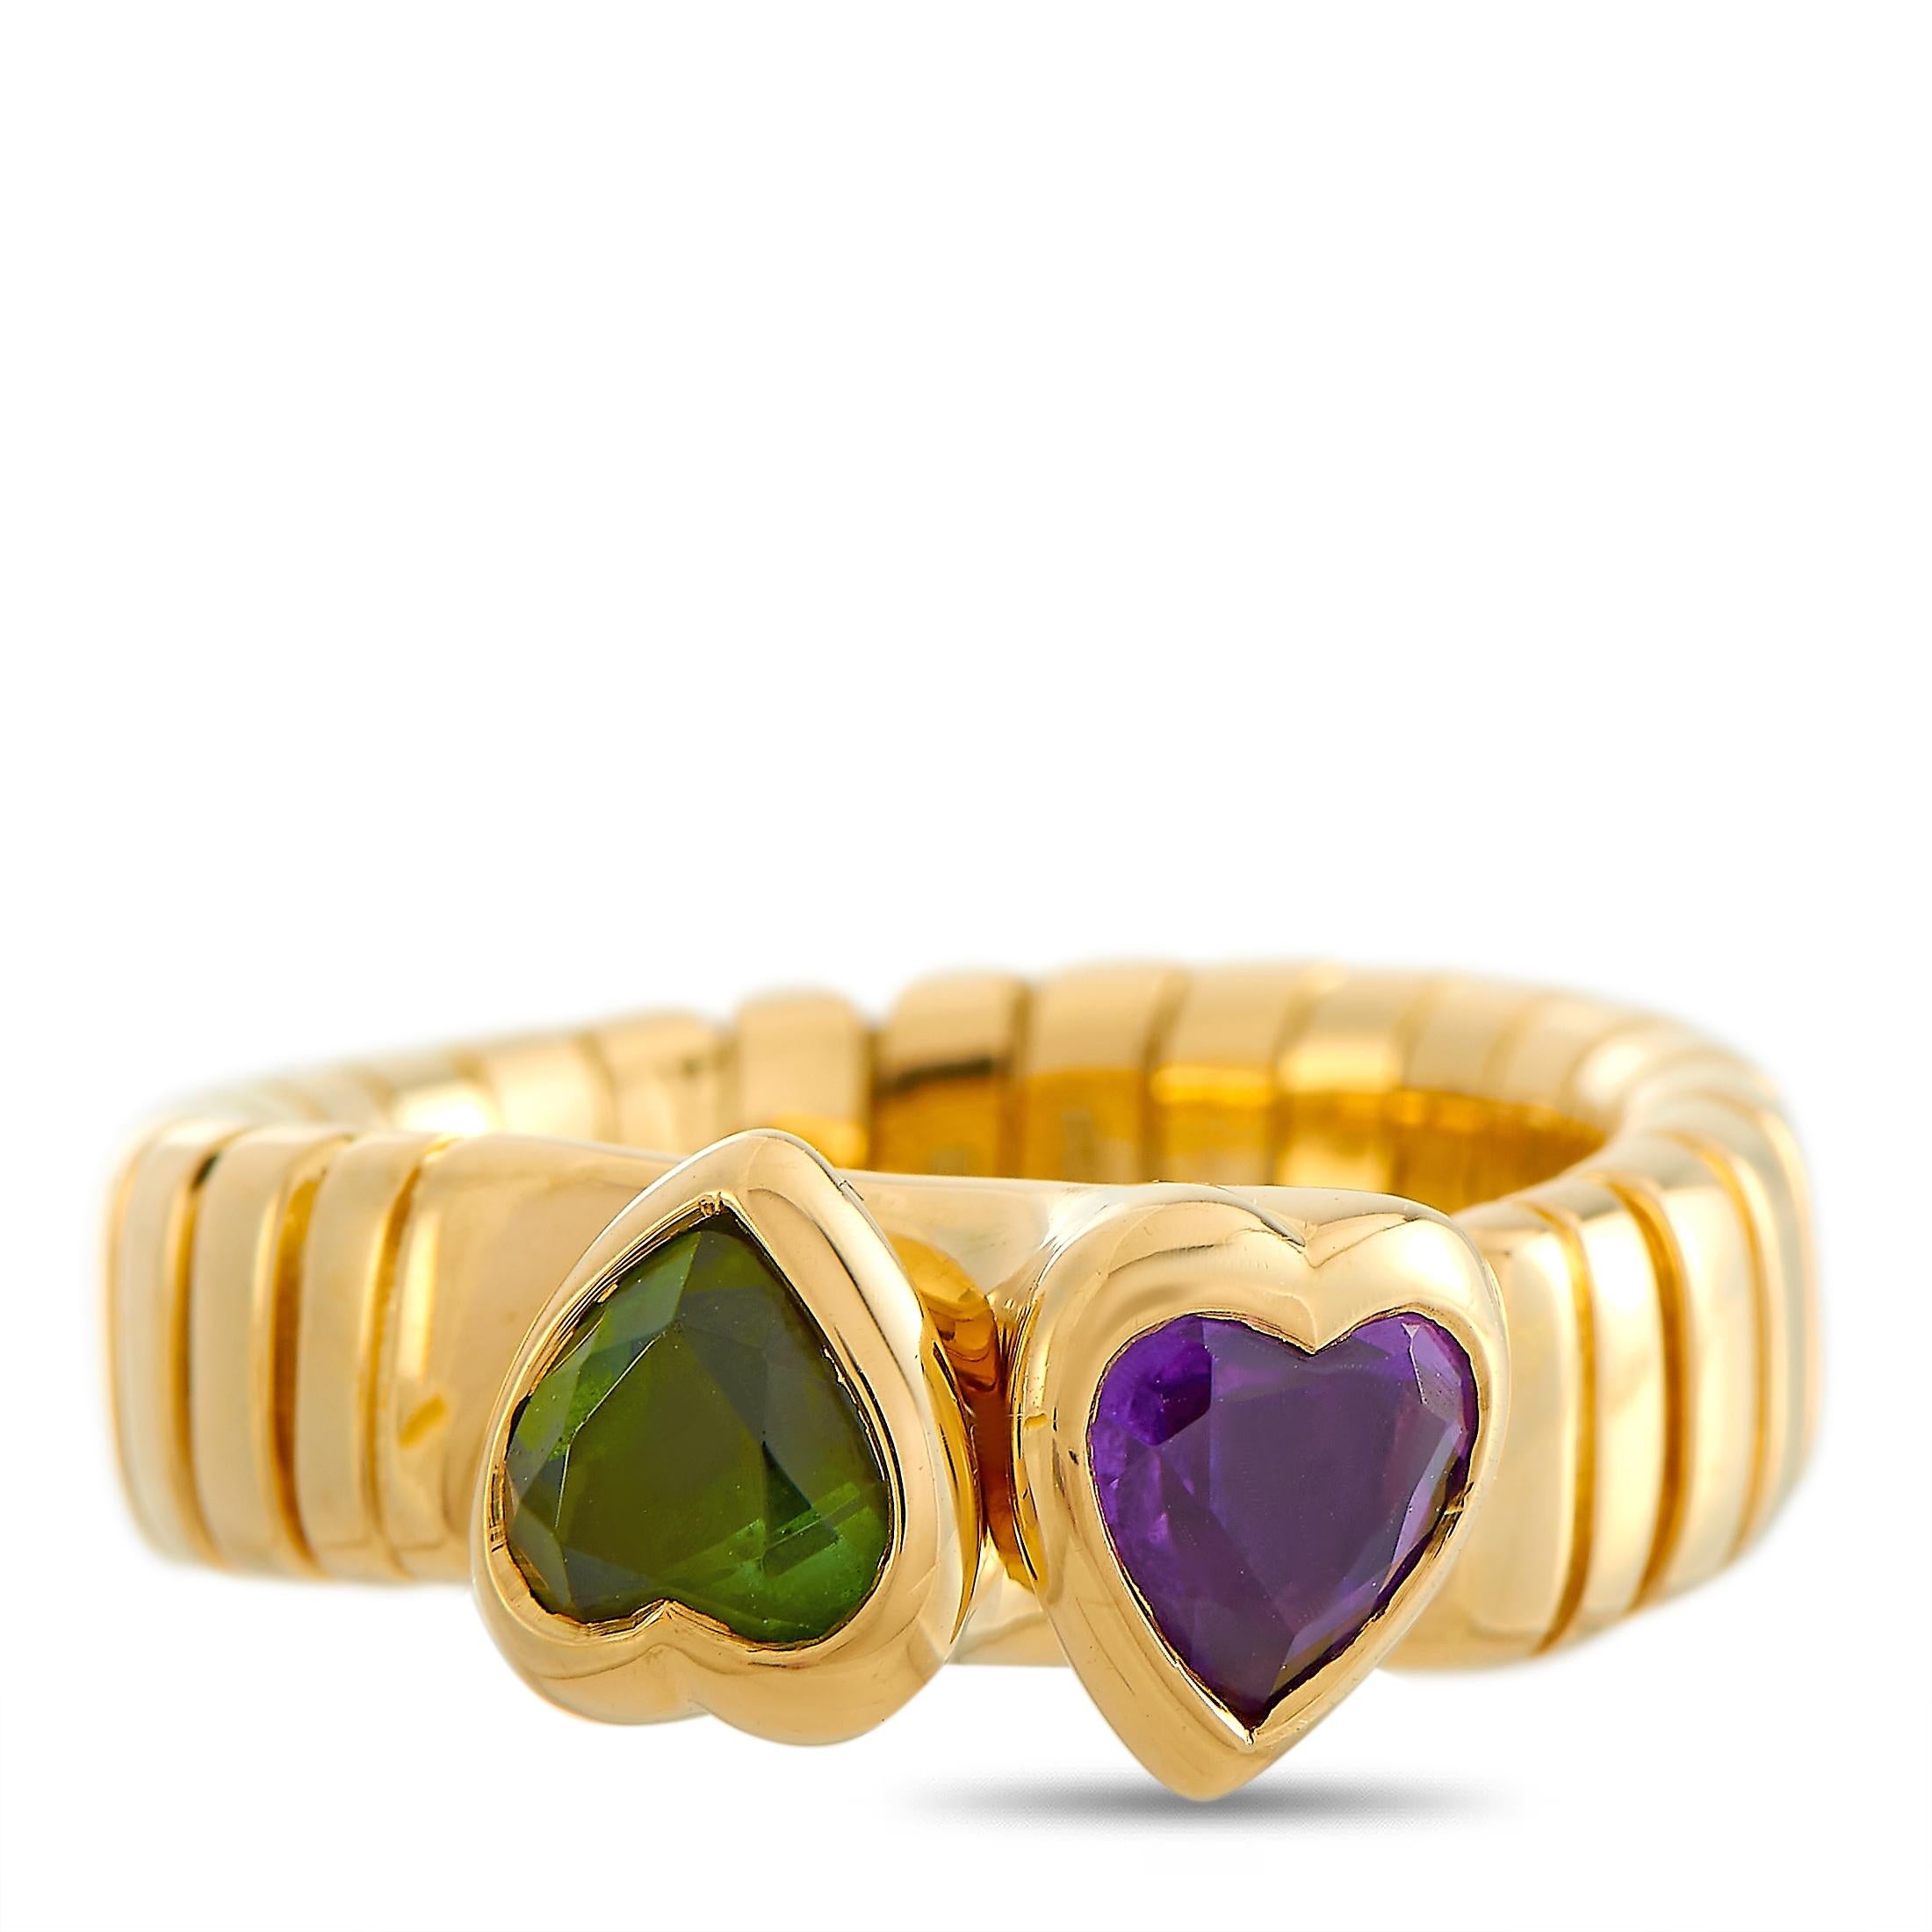 Women's Bvlgari 18 Karat Yellow Gold Peridot and Amethyst Heart Ring